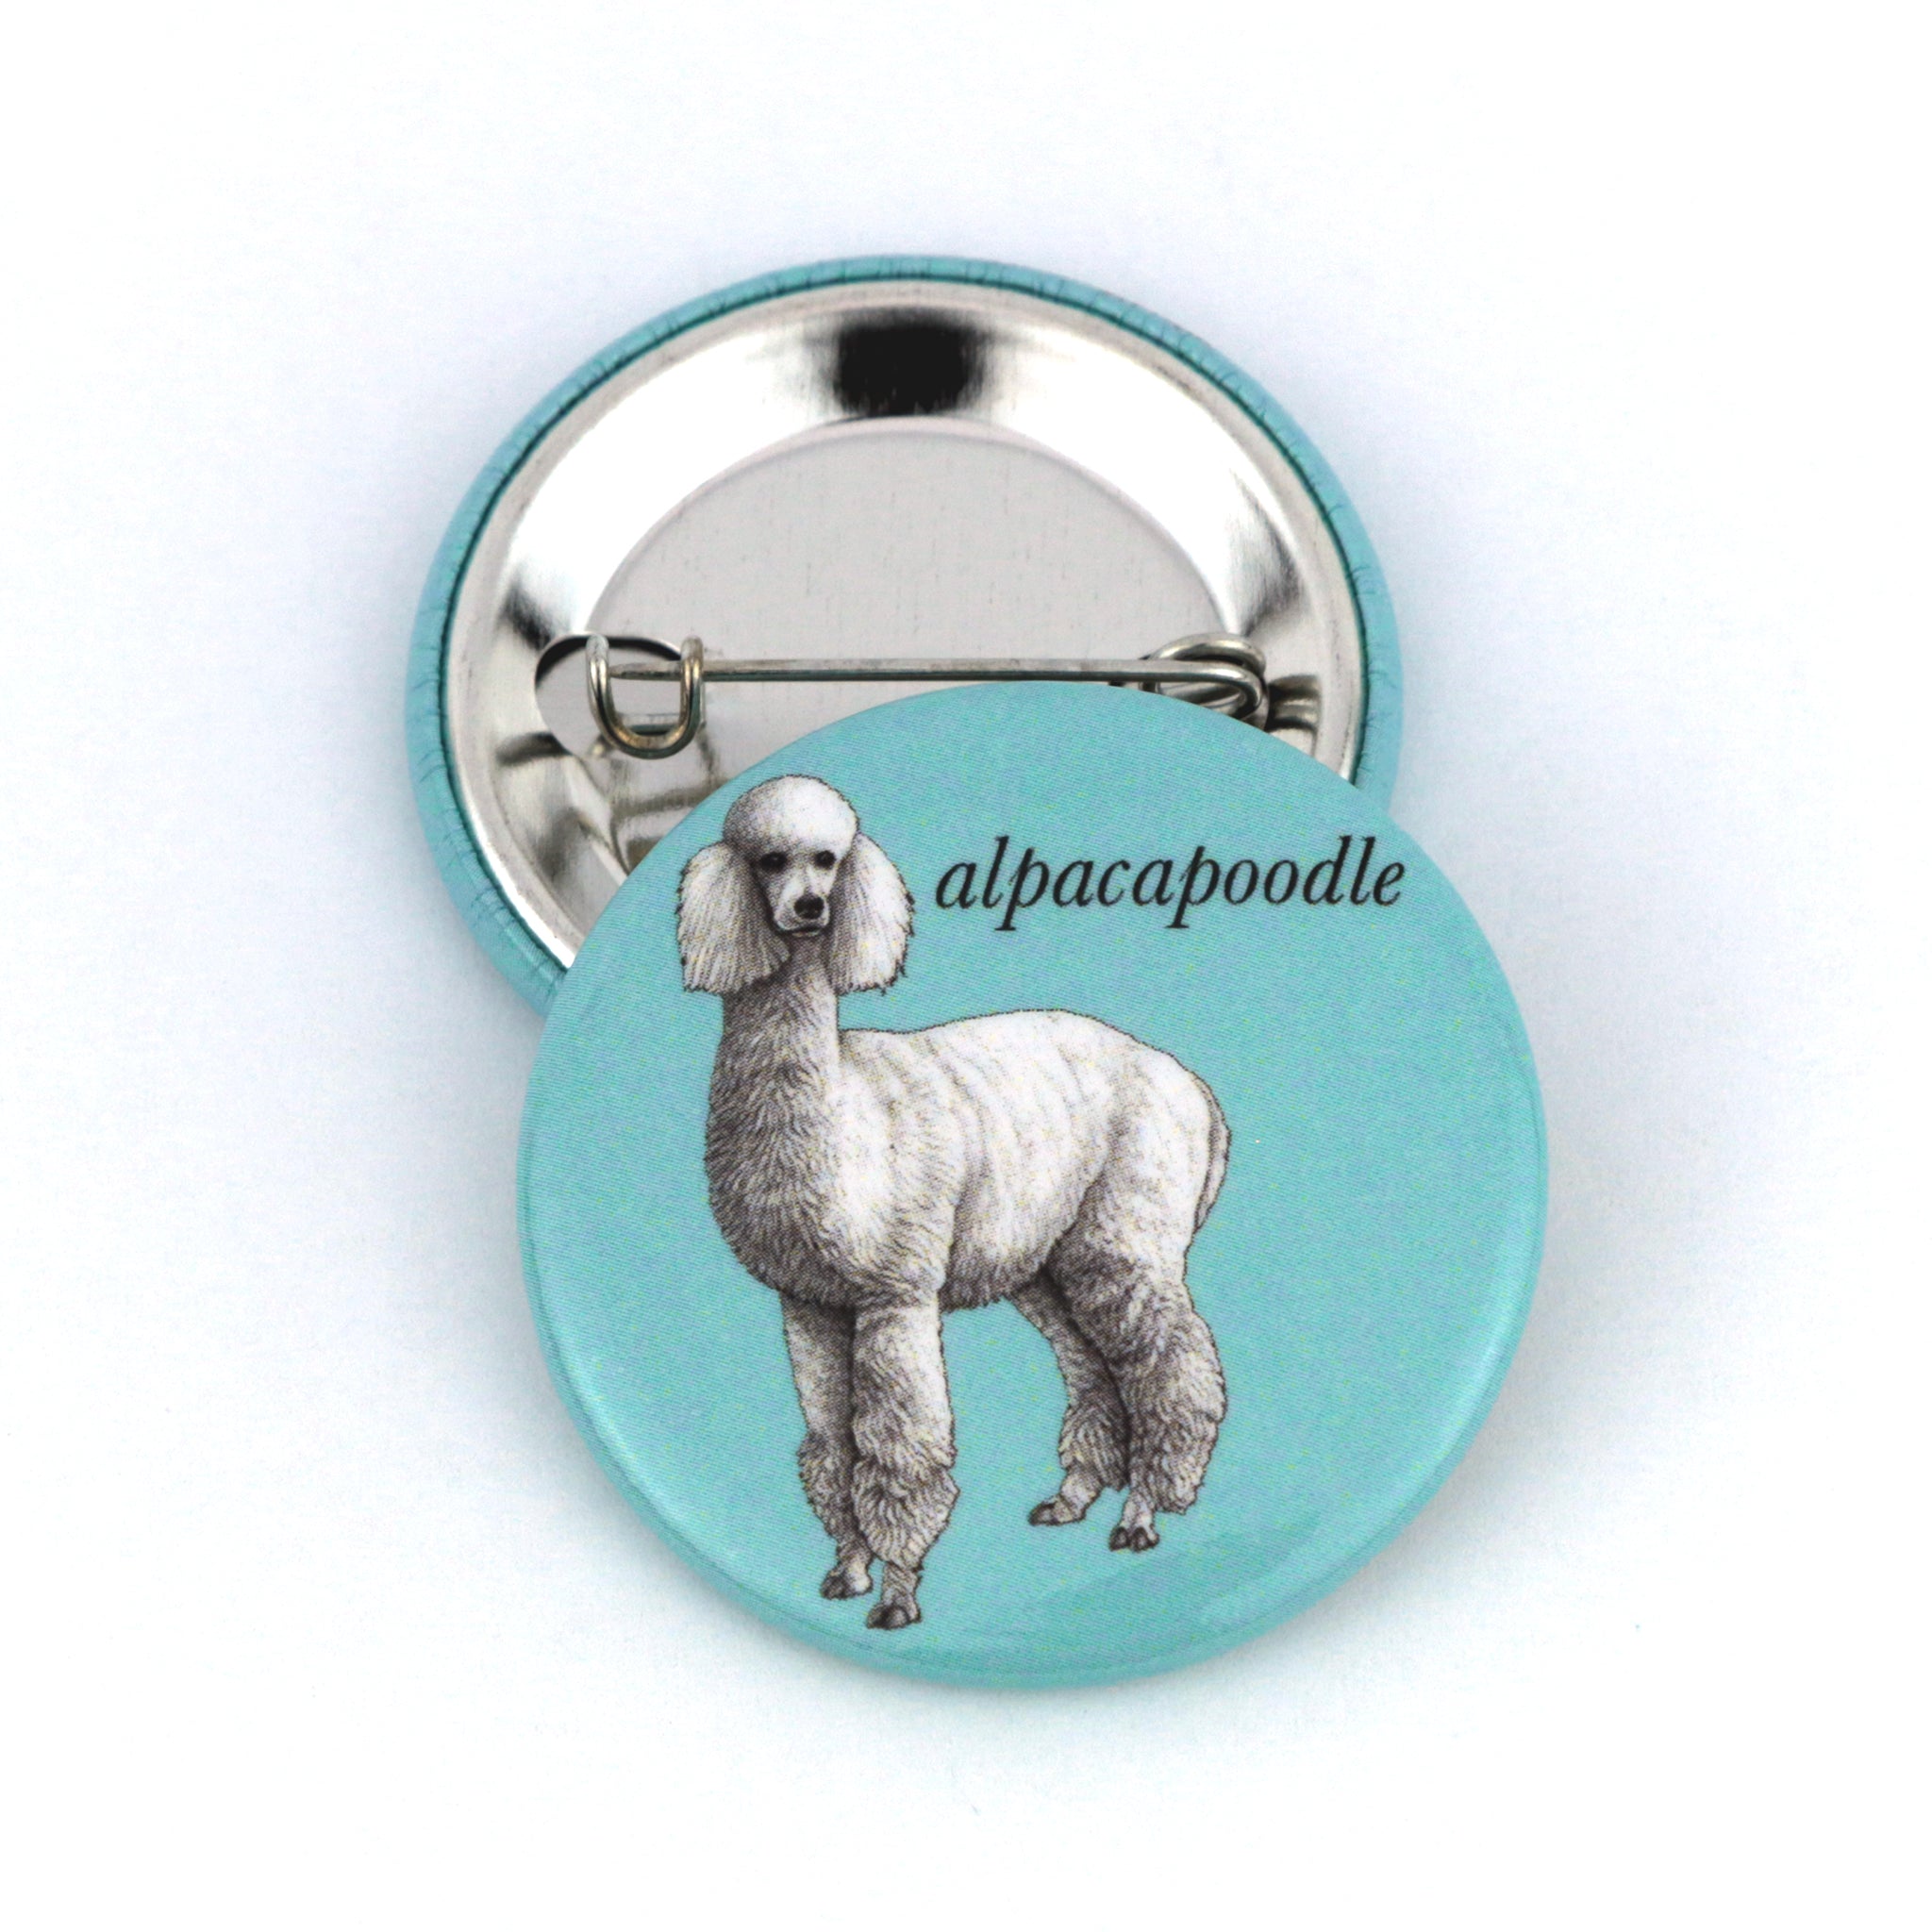 Alpacapoodle | Alpaca + Poodle Hybrid Animal | 1.5" Pinback Button